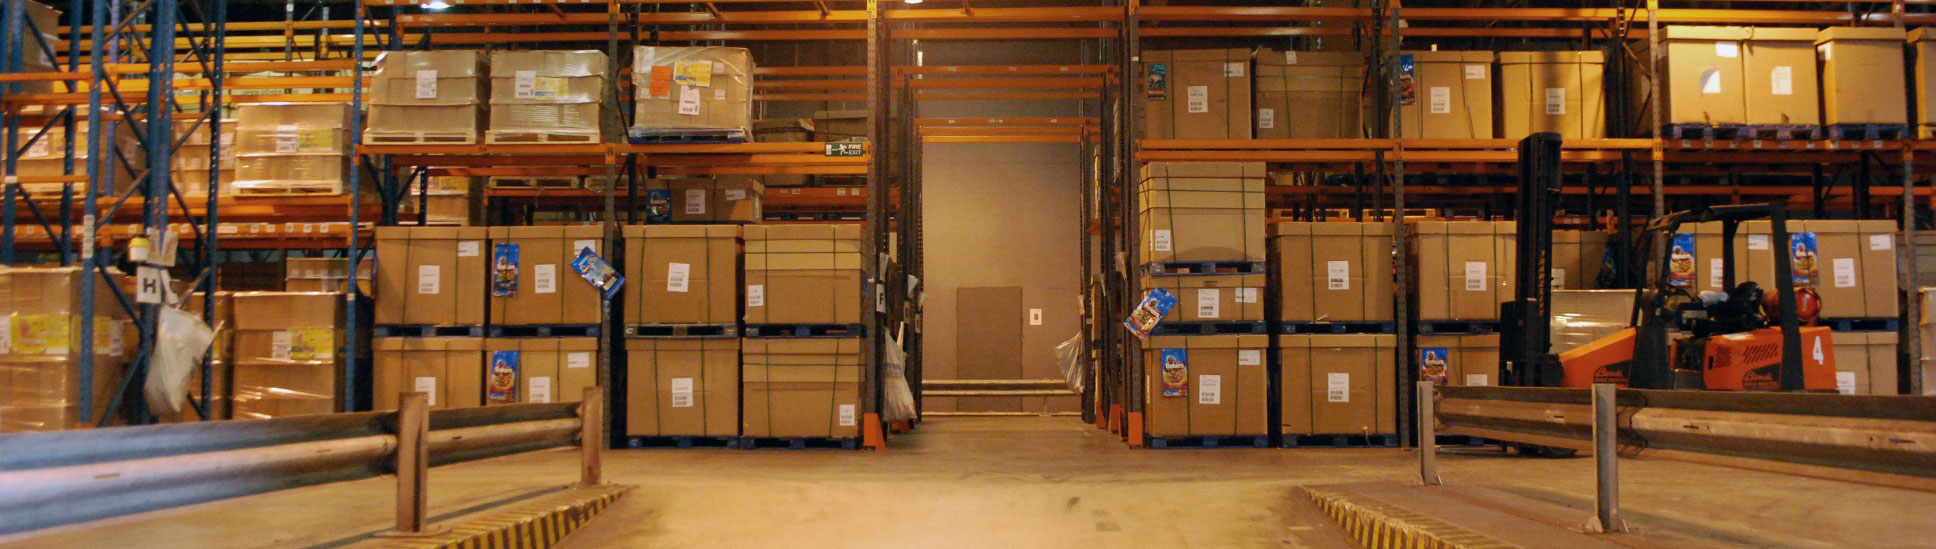 Lait Storage warehouse